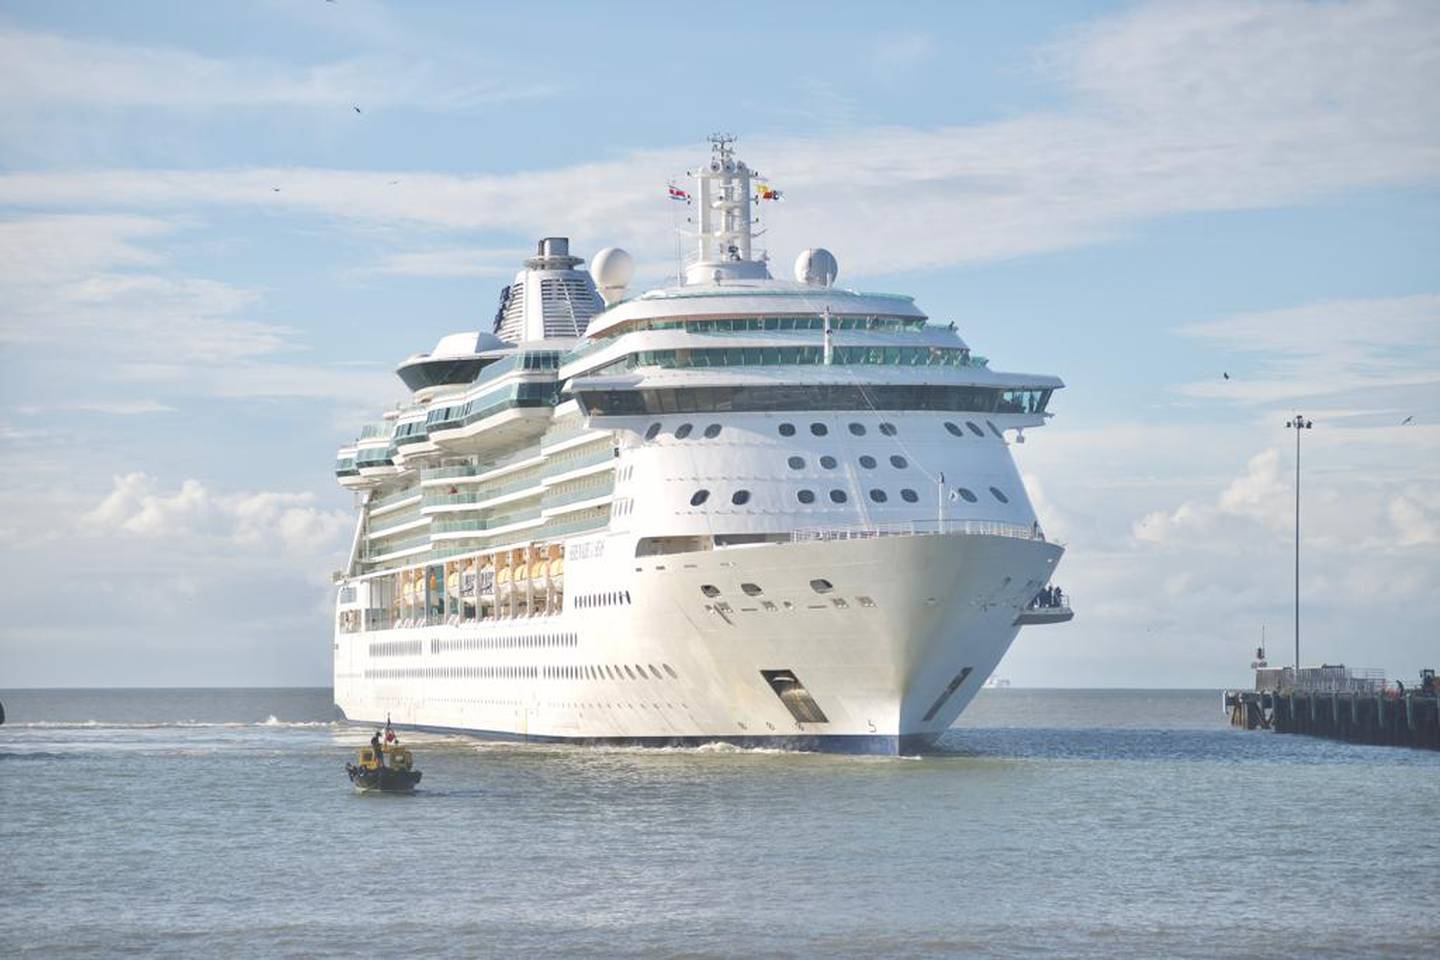 El crucero 'Serenade of the Seas' tiene capacidad para 2.501 pasajeros, pero está operando al 30% de su aforo en vista de los protocolos de seguridad. Su llegada a Puntarenas reinicia esta actividad en ese muelle. Foto: Cortesía ICT